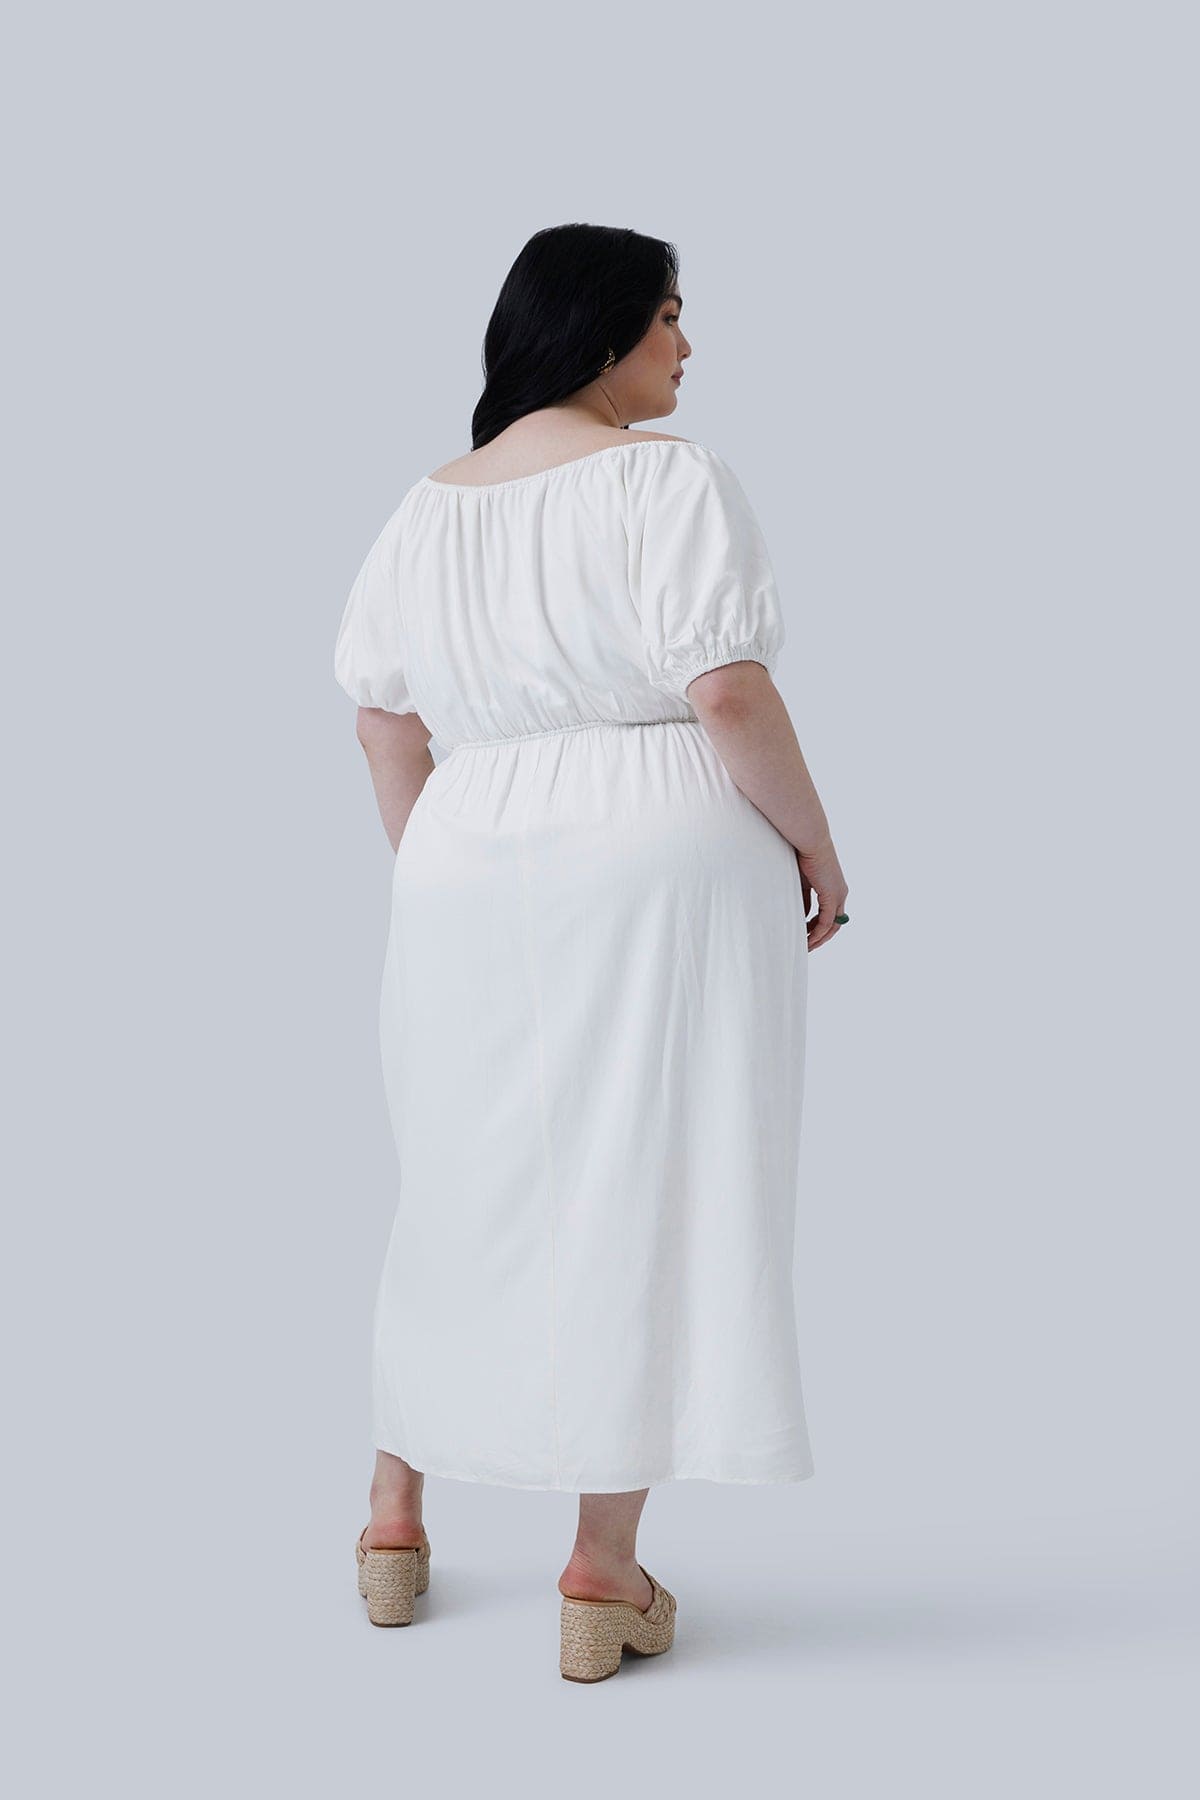 Gia Midi Dress White - Gia IRL Plus Size GIA/irl